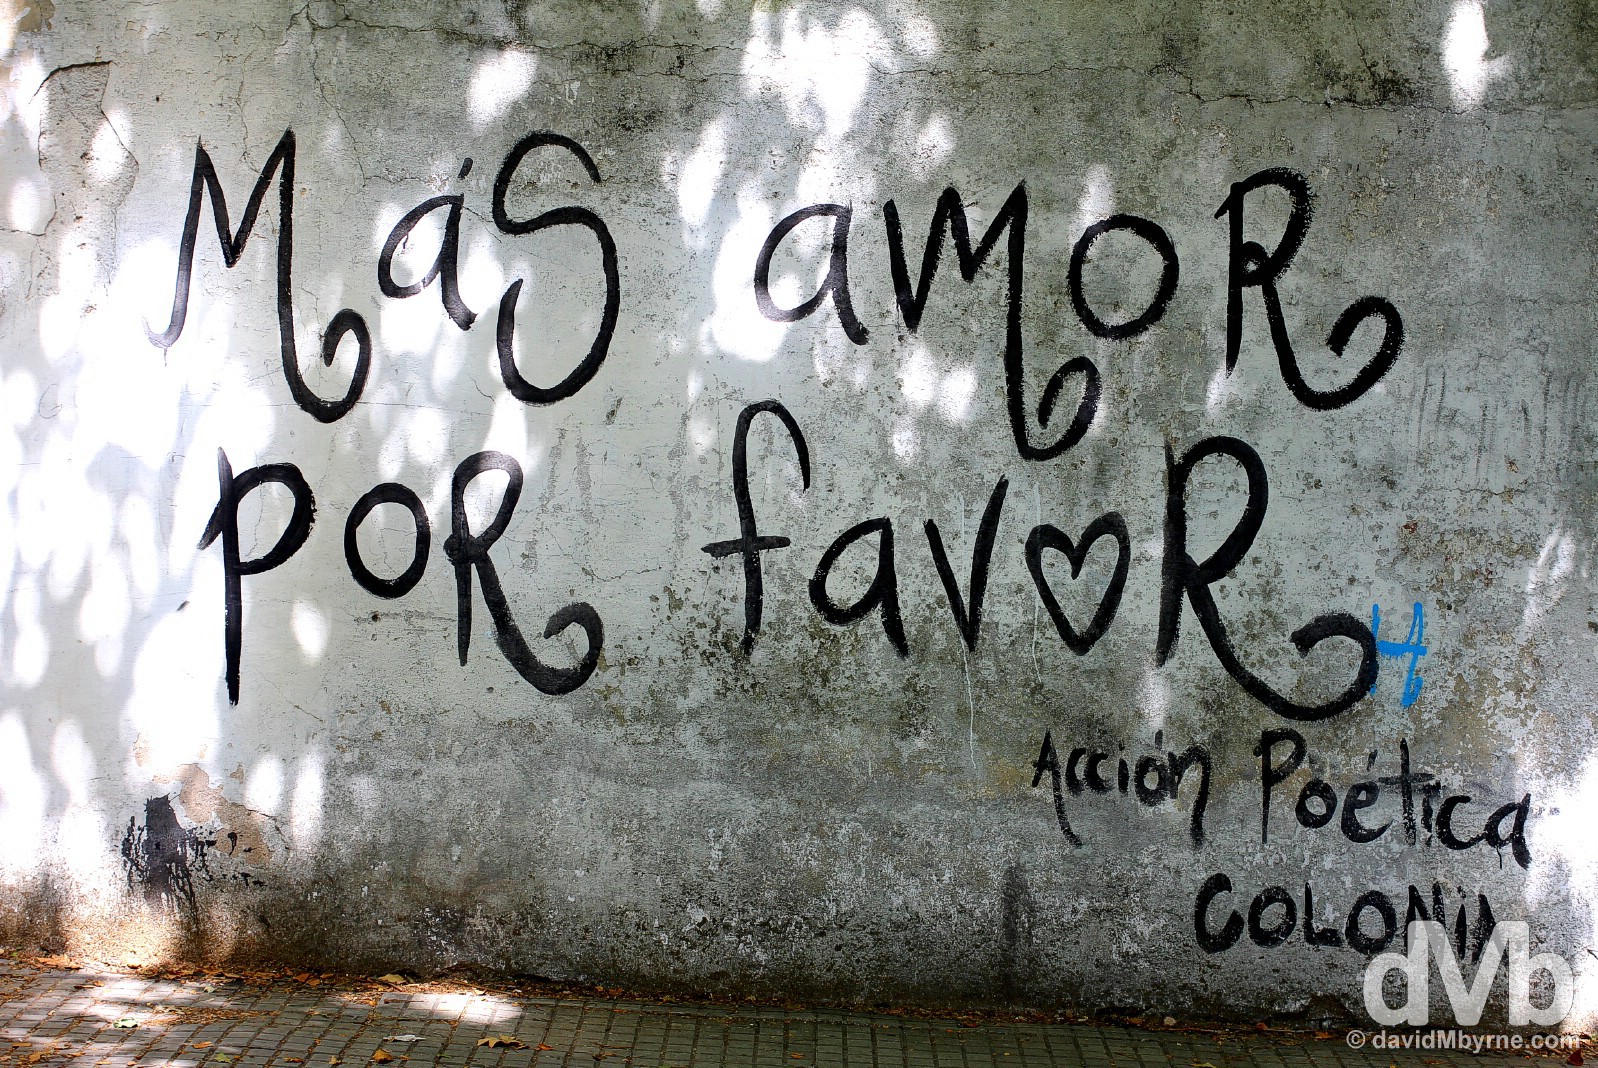 'More love please'. On the streets of Colonia Del Sacramento, Uruguay. December 7, 2015.